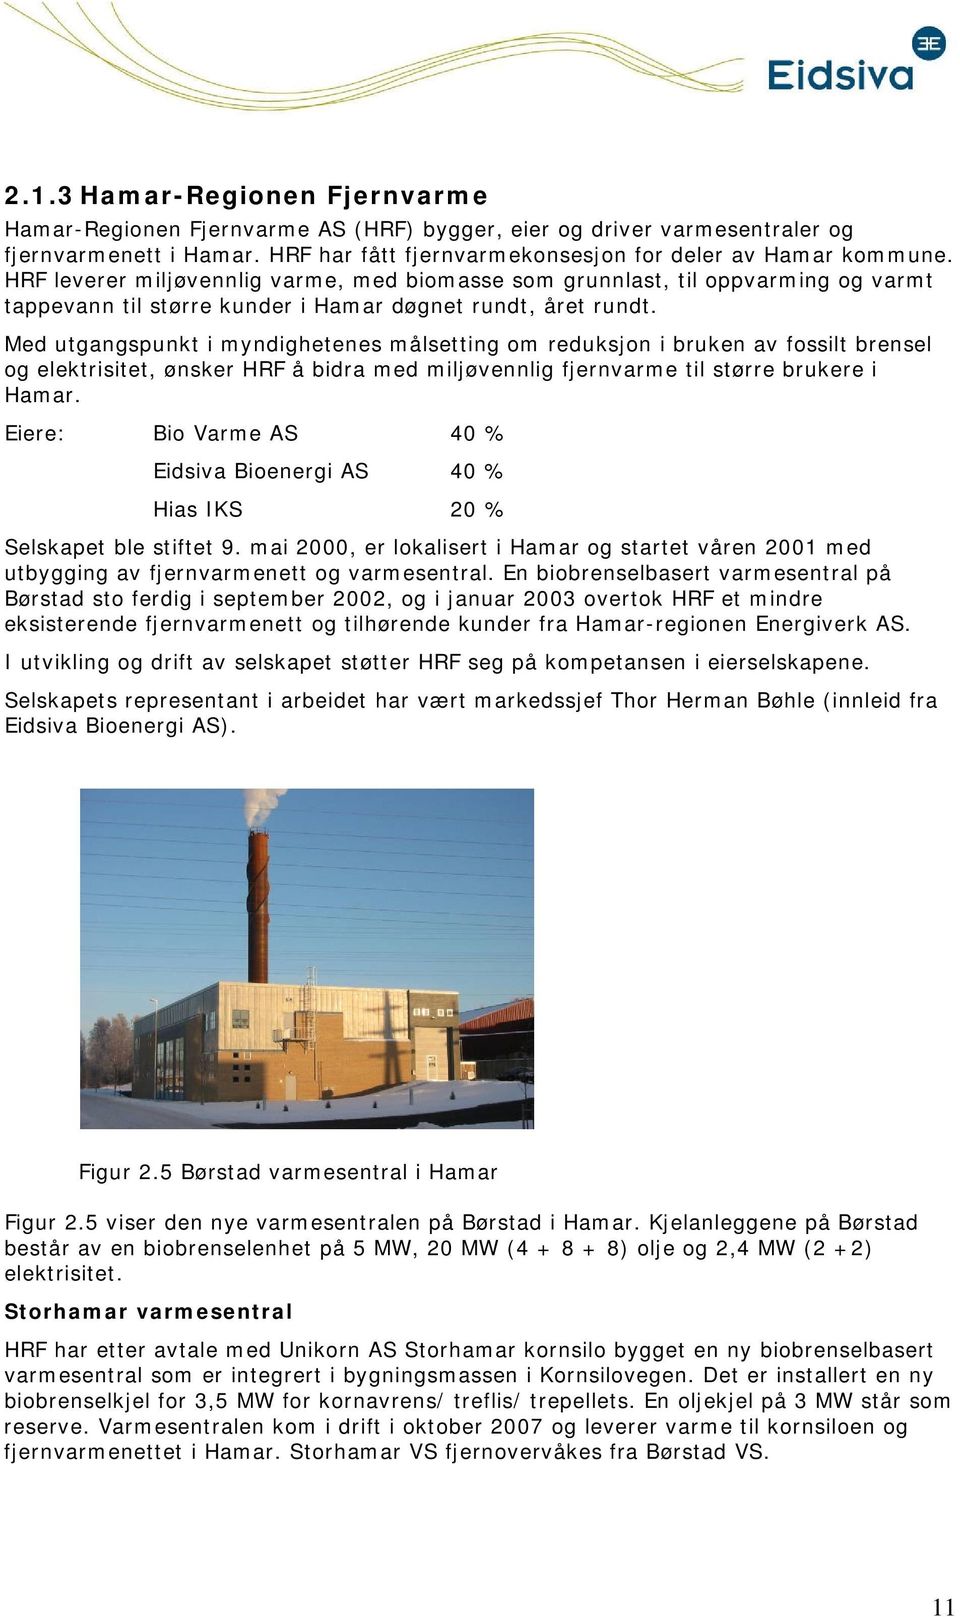 Med utgangspunkt i myndighetenes målsetting m reduksjn i bruken av fssilt brensel g elektrisitet, ønsker HRF å bidra med miljøvennlig fjernvarme til større brukere i Hamar.